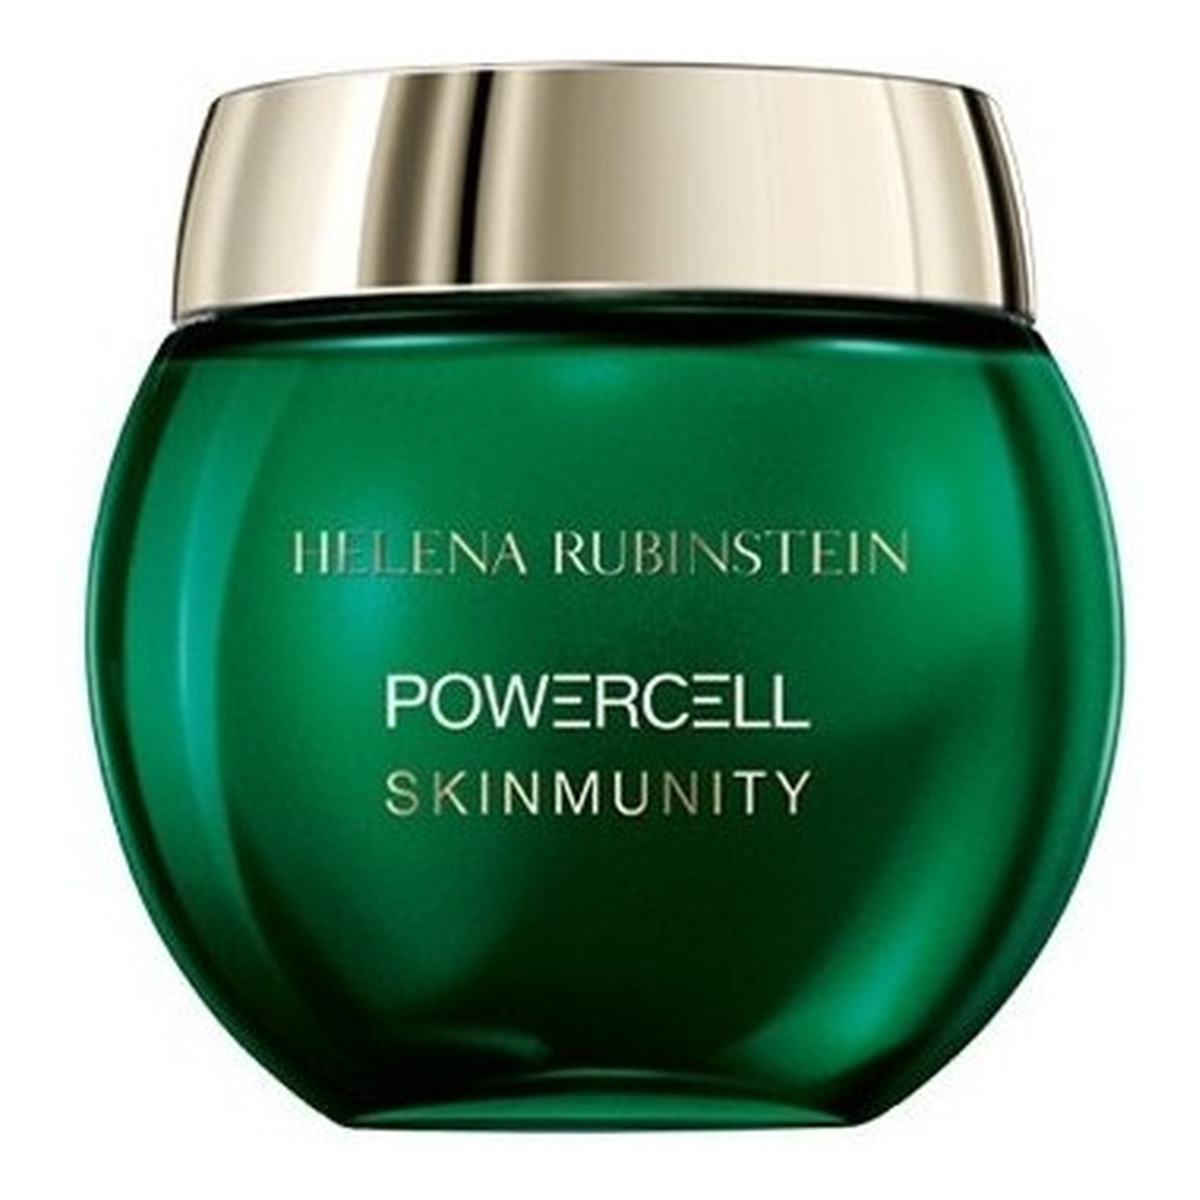 Helena Rubinstein Powercell Skinmunity Wzmacniający krem do twarzy 50ml